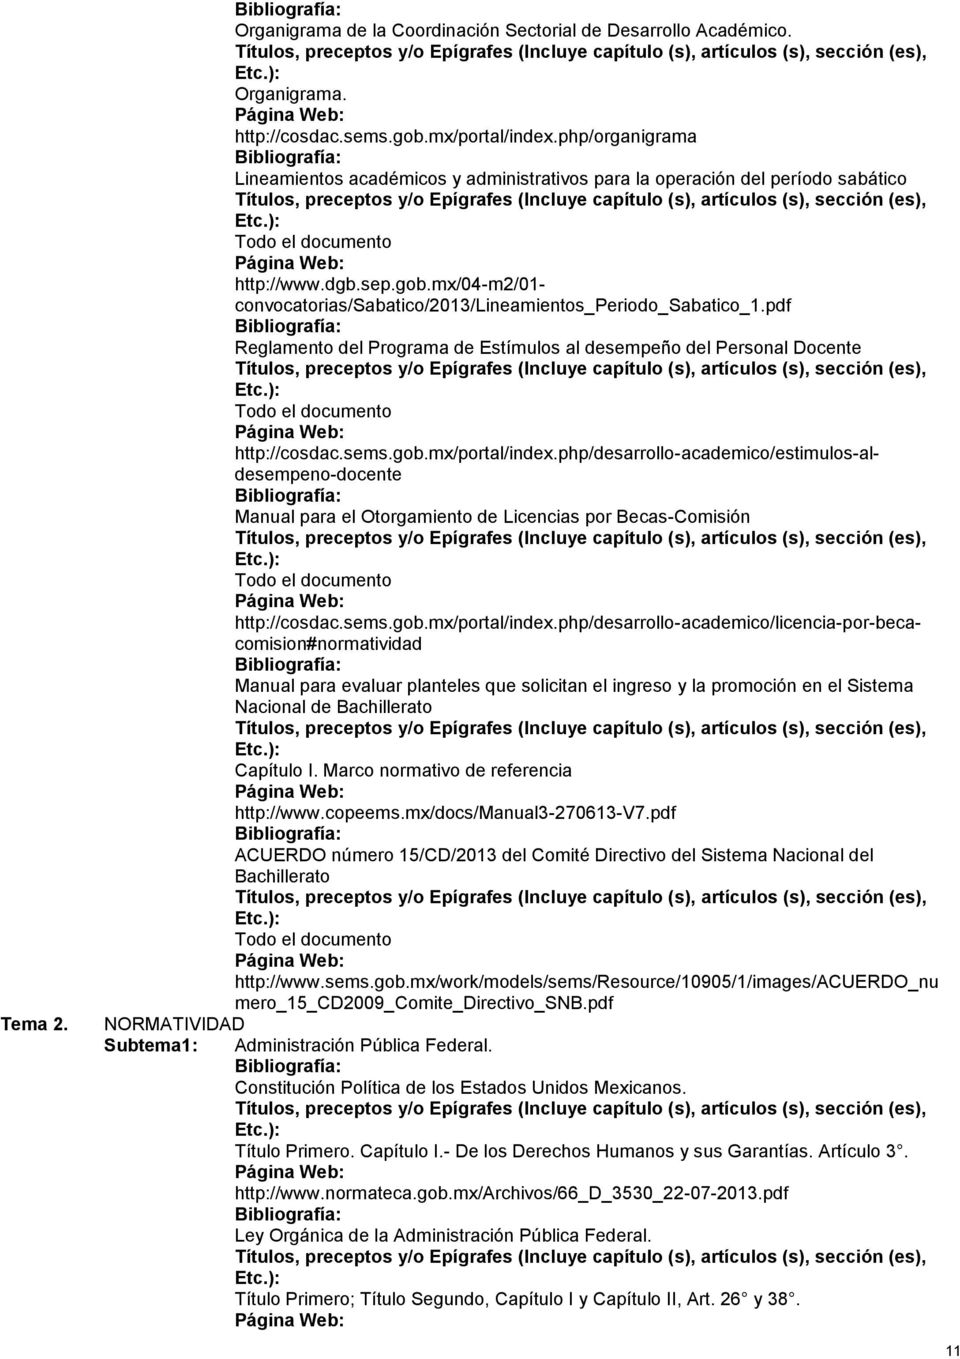 pdf Reglamento del Programa de Estímulos al desempeño del Personal Docente http://cosdac.sems.gob.mx/portal/index.